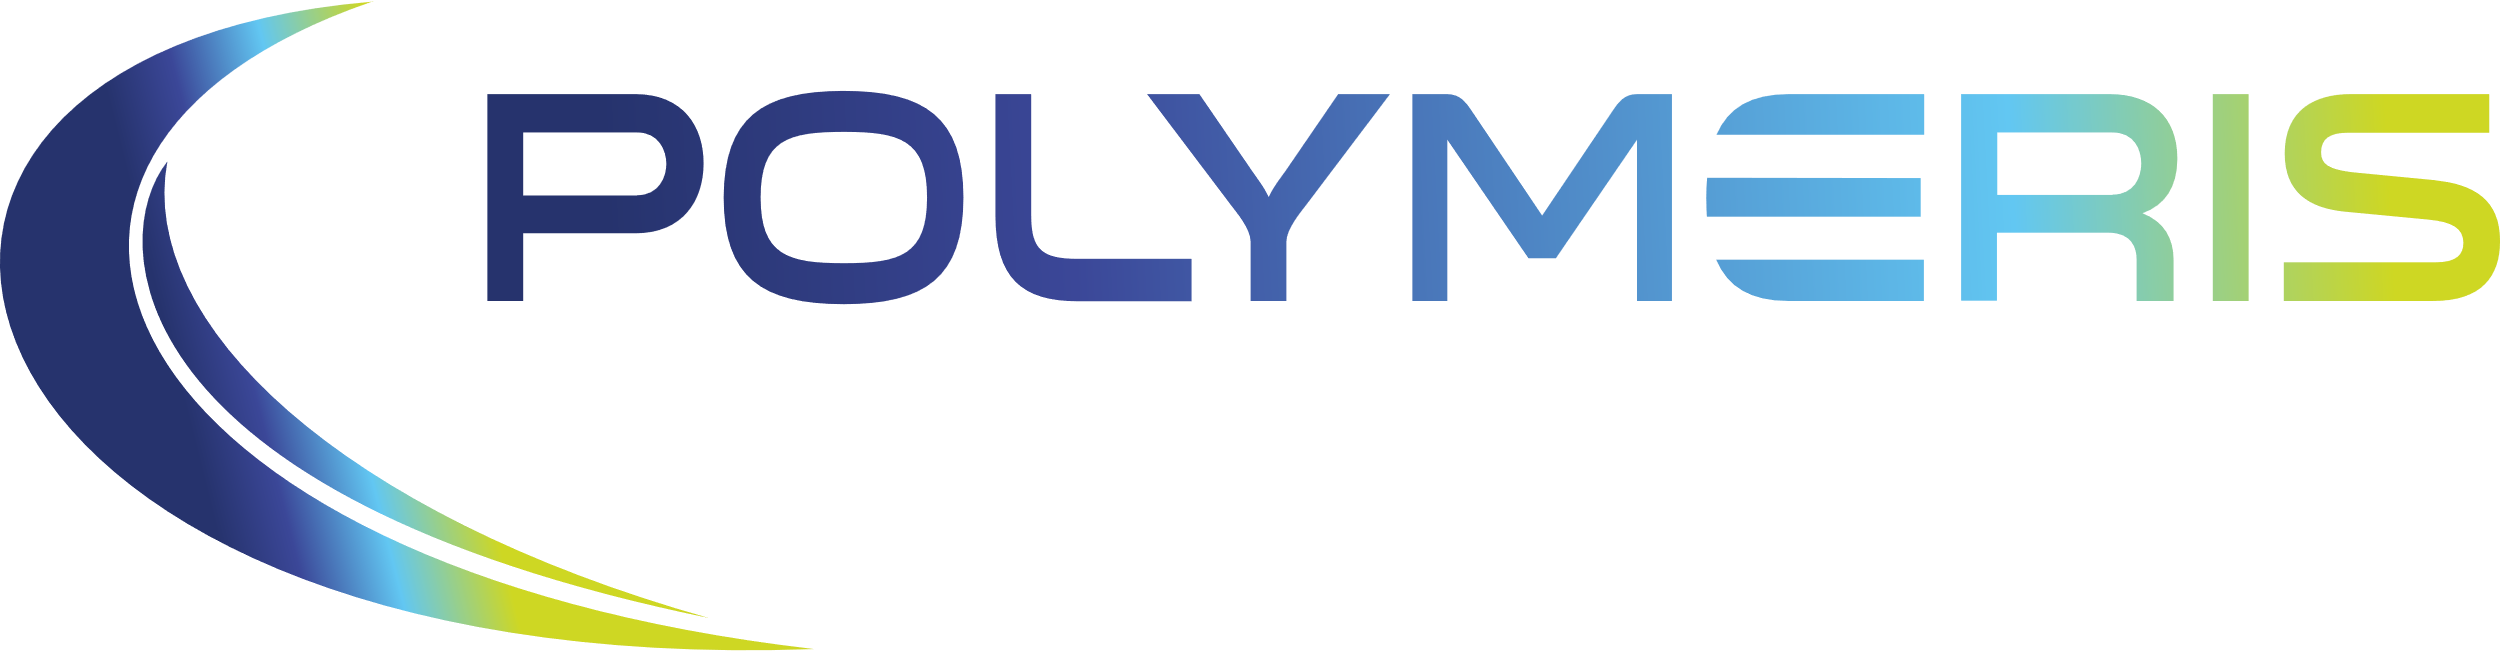 Polymeris - Partenaire de DMM